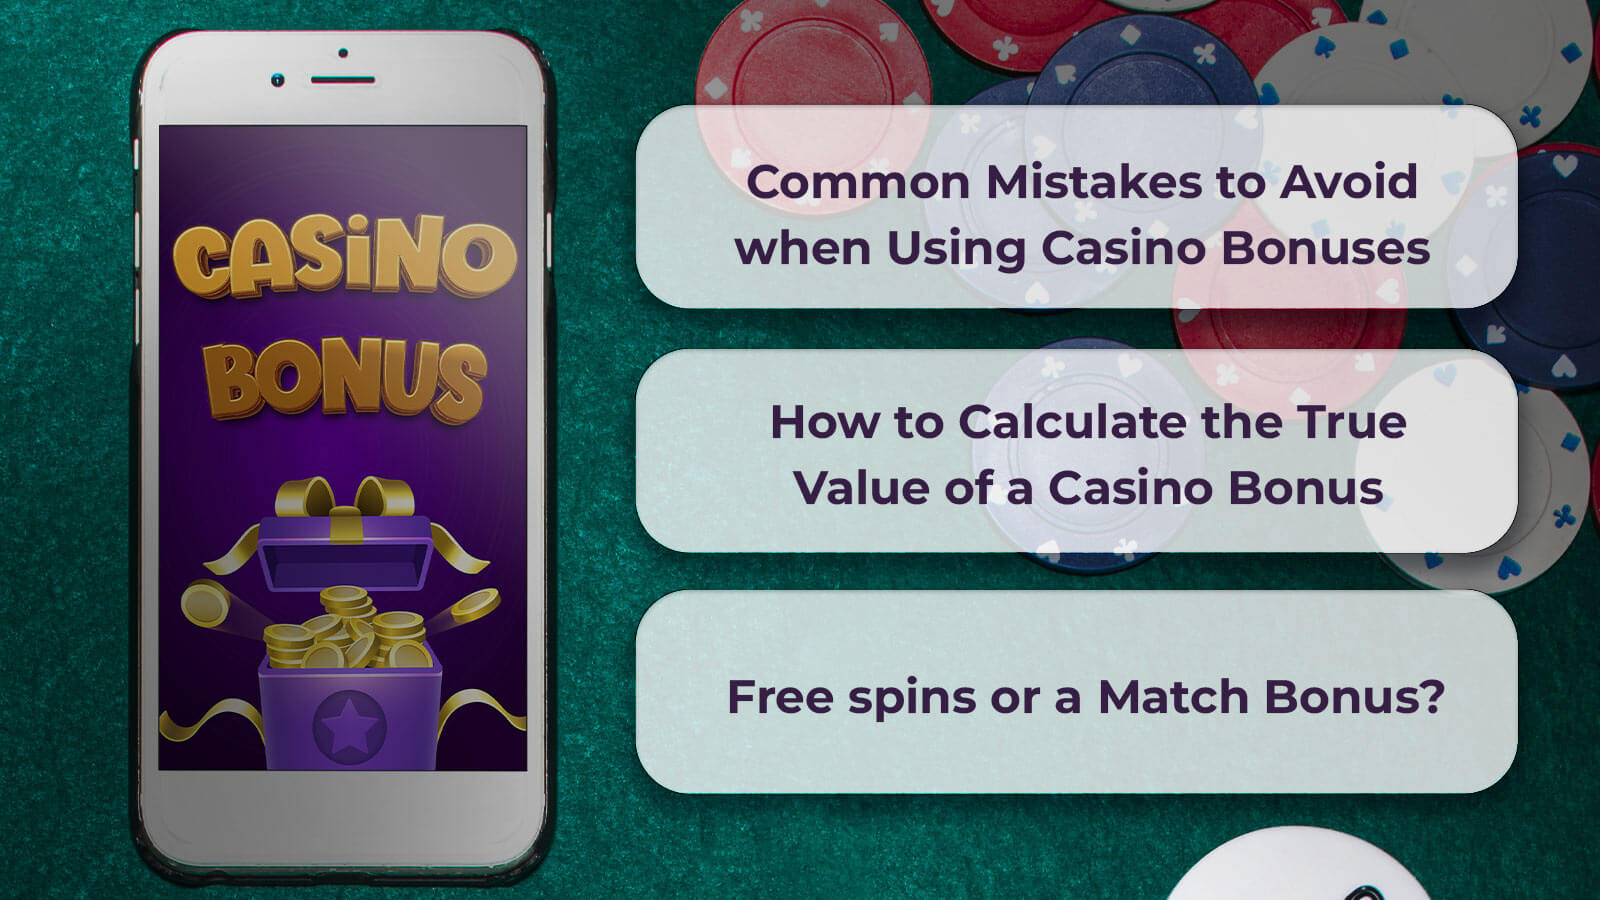 How to Calculate the True Value of a Casino Bonus